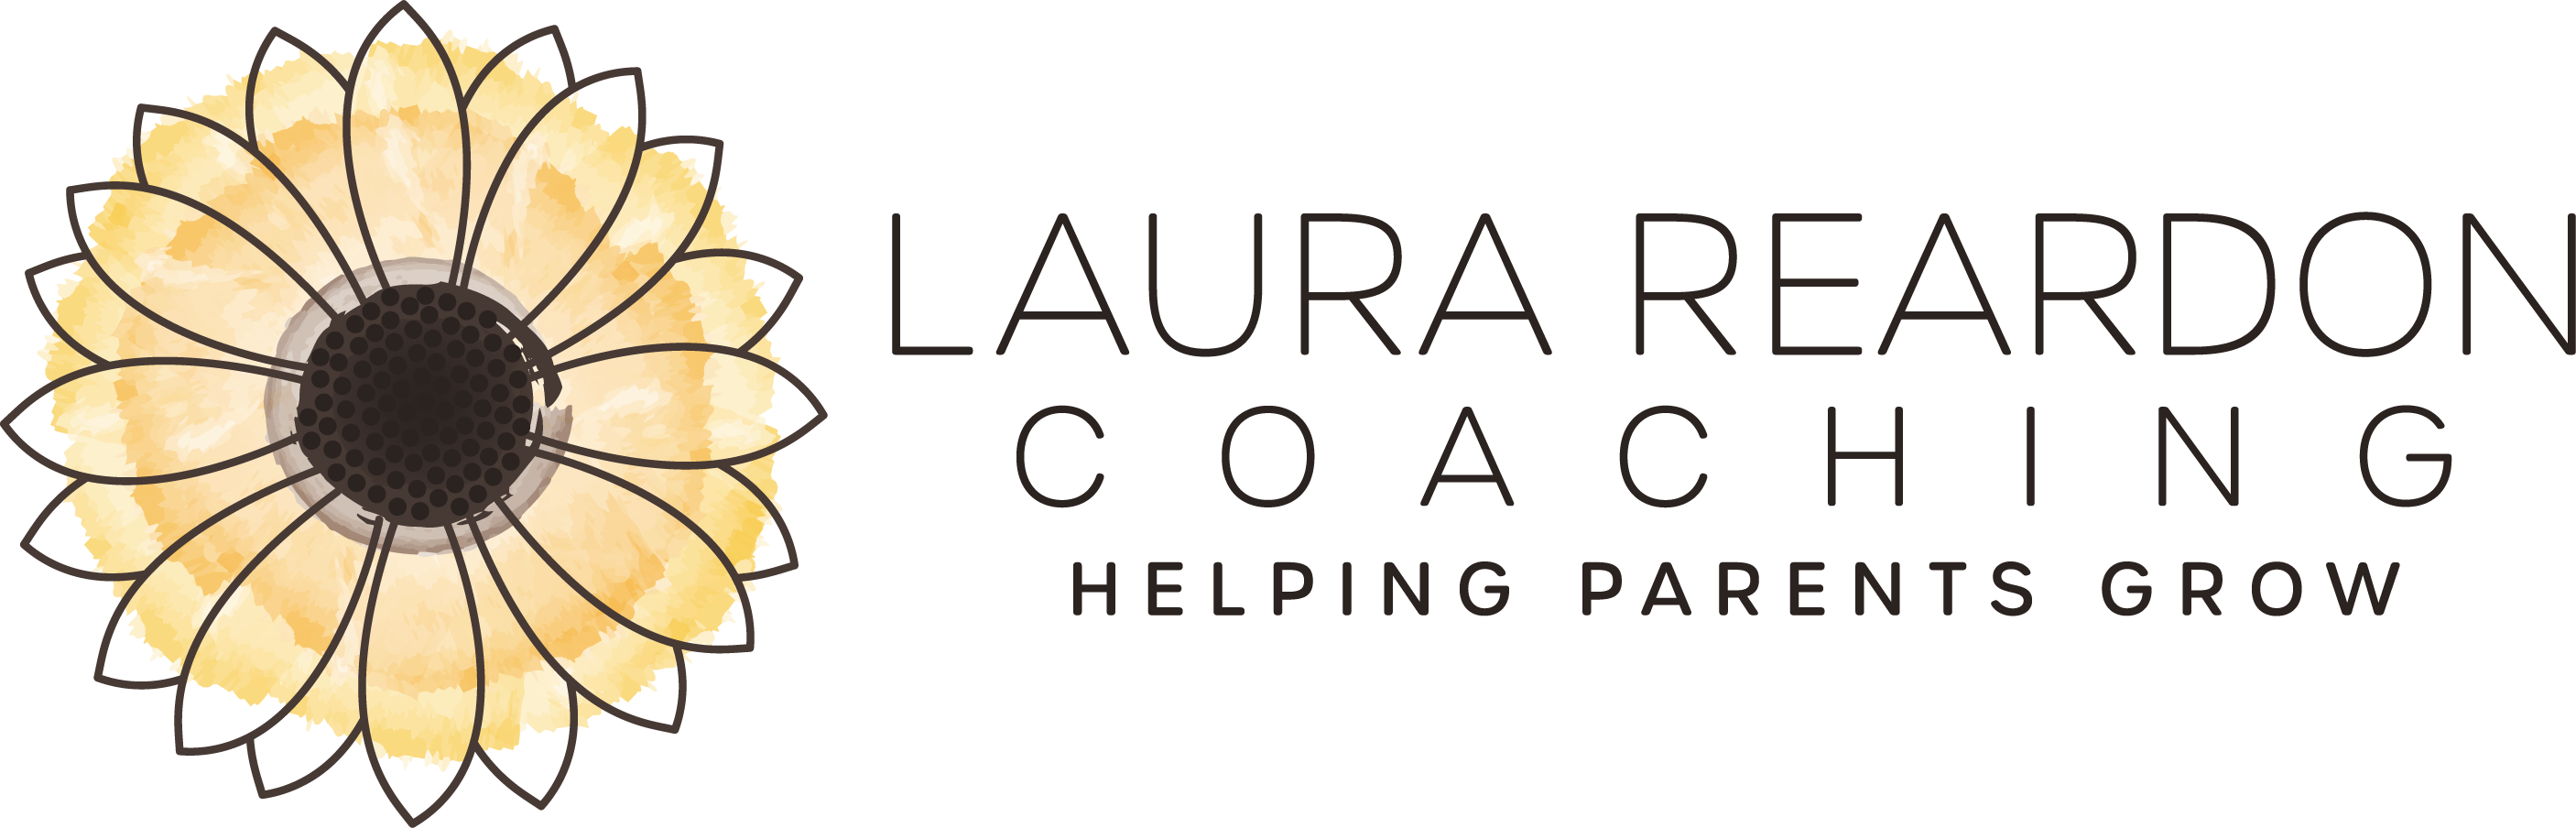 Laura Reardon Coaching